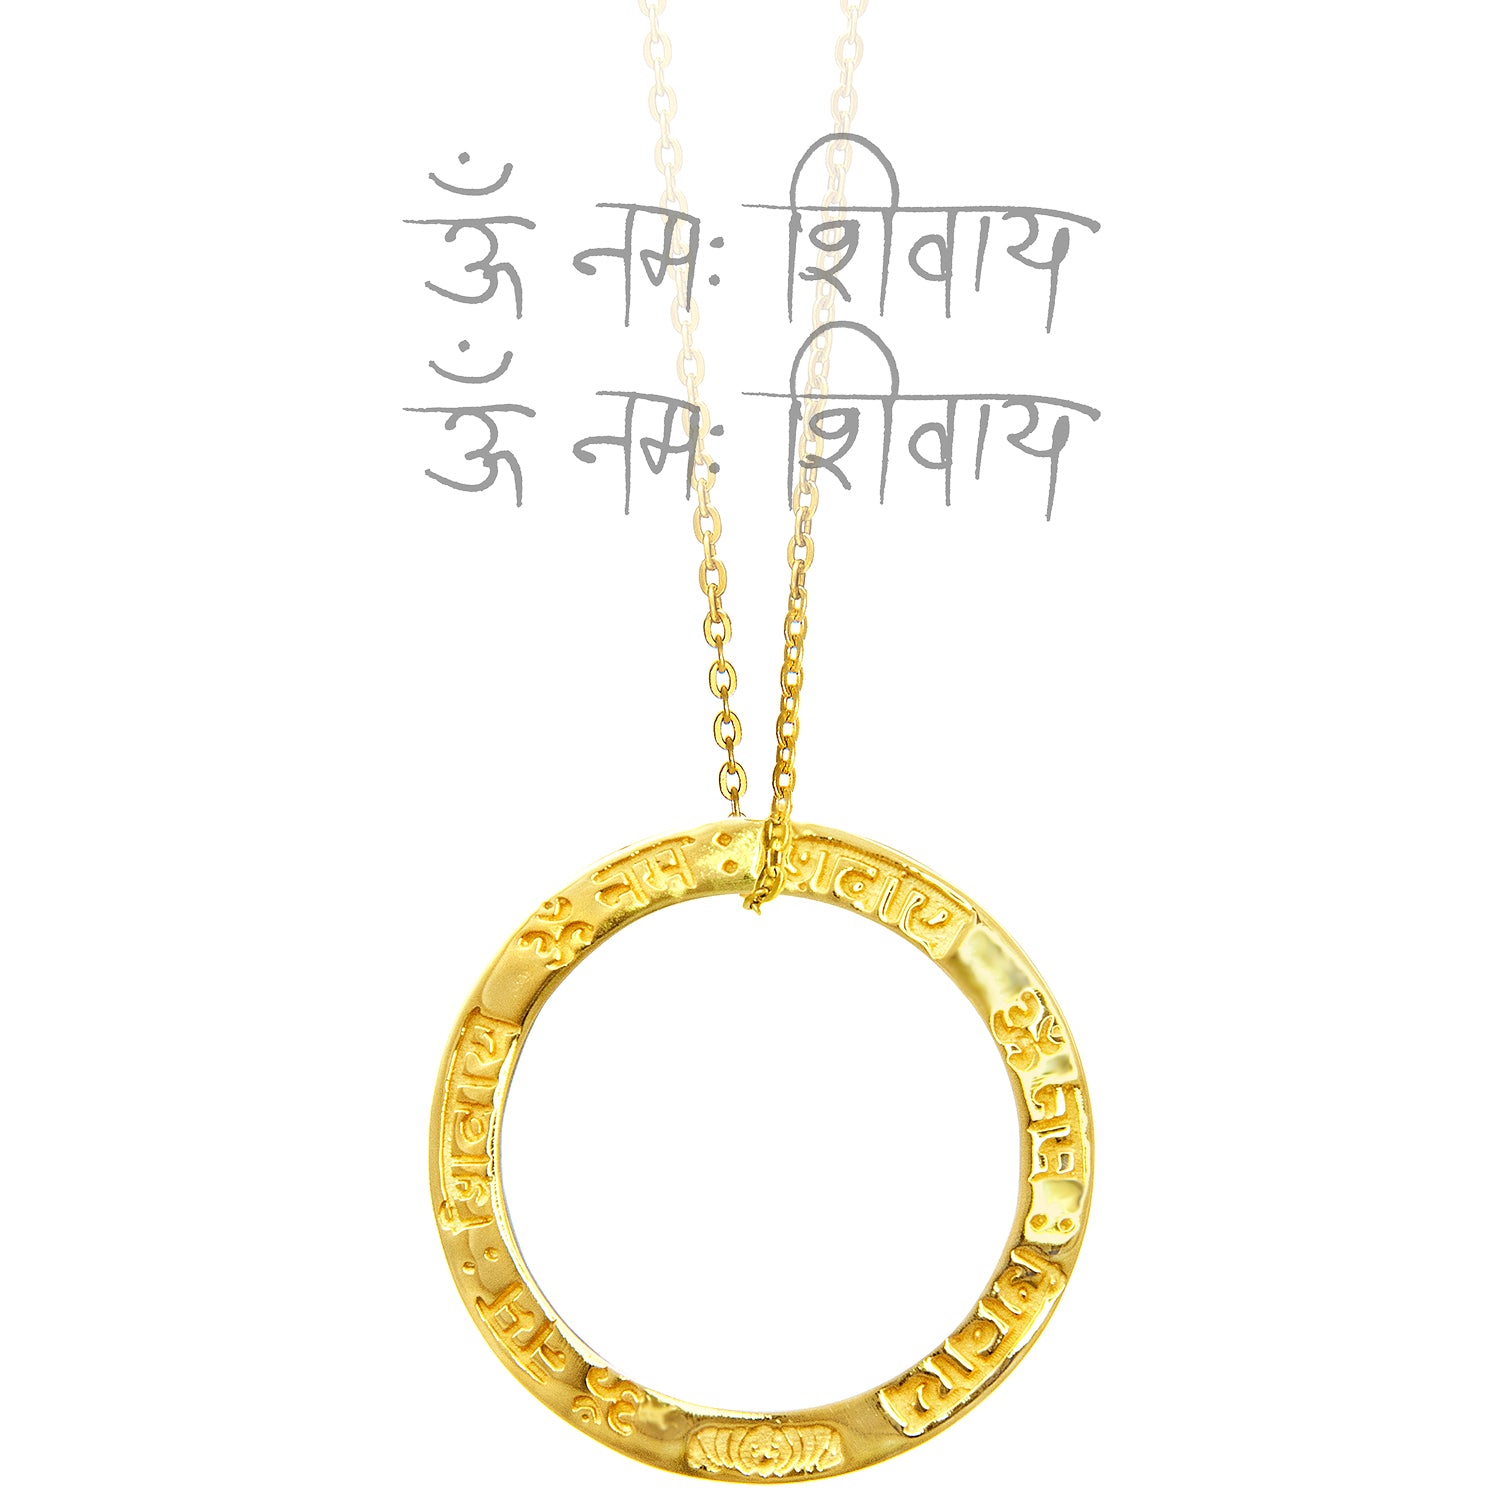 Vergoldeter Shiva Mantra Anhänger aus Sterling Silber mit Kette von ETERNAL BLISS - Spiritueller Schmuck